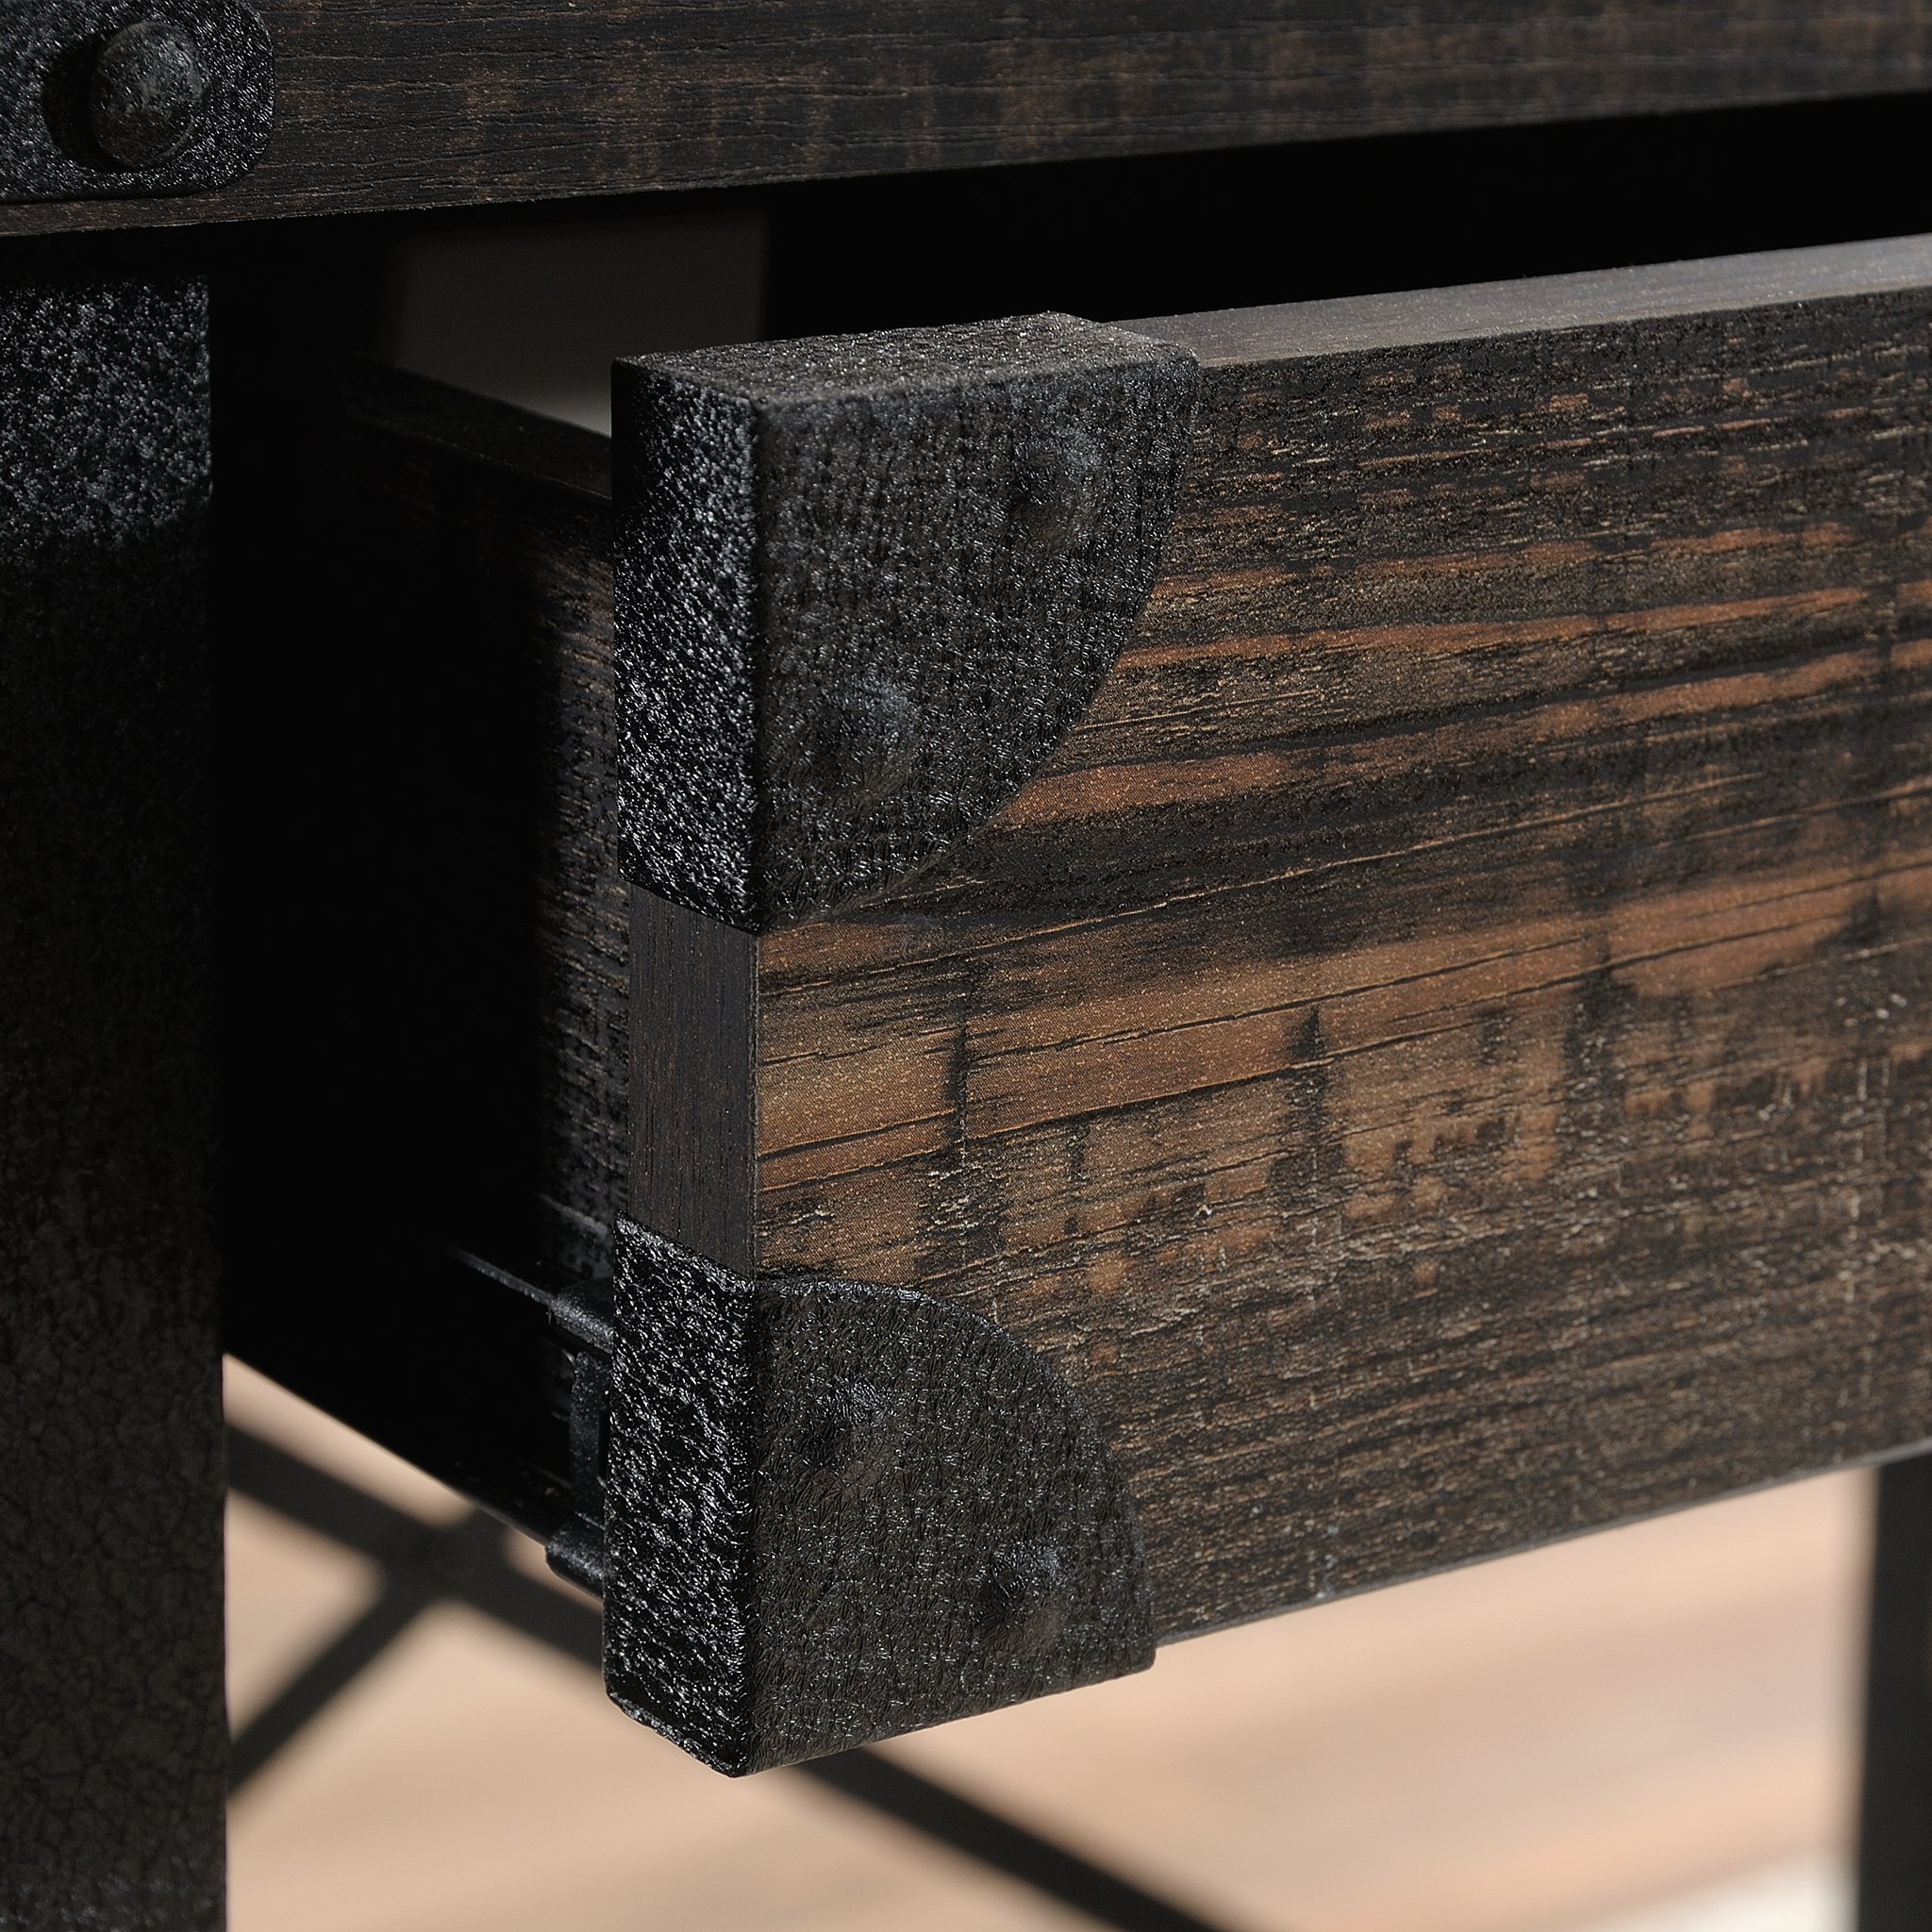 Sauder Steel River Desk, Carbon Oak Finish - image 4 of 12